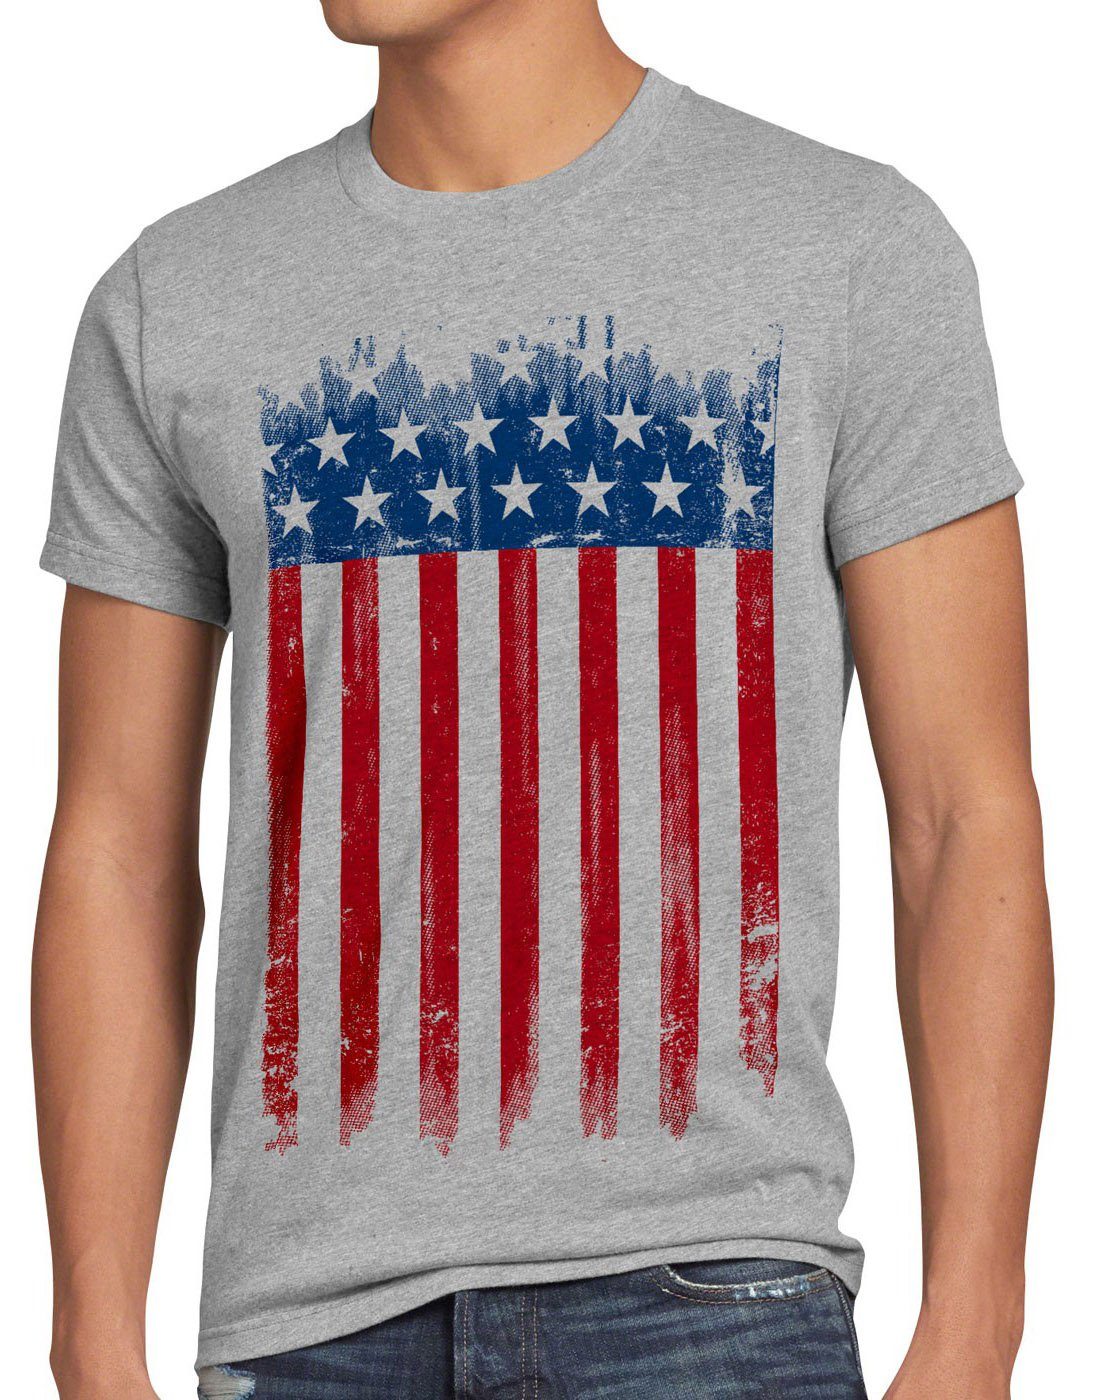 von united staaten amerika Print-Shirt Flagge vereinigte style3 grau america states Herren T-Shirt meliert US